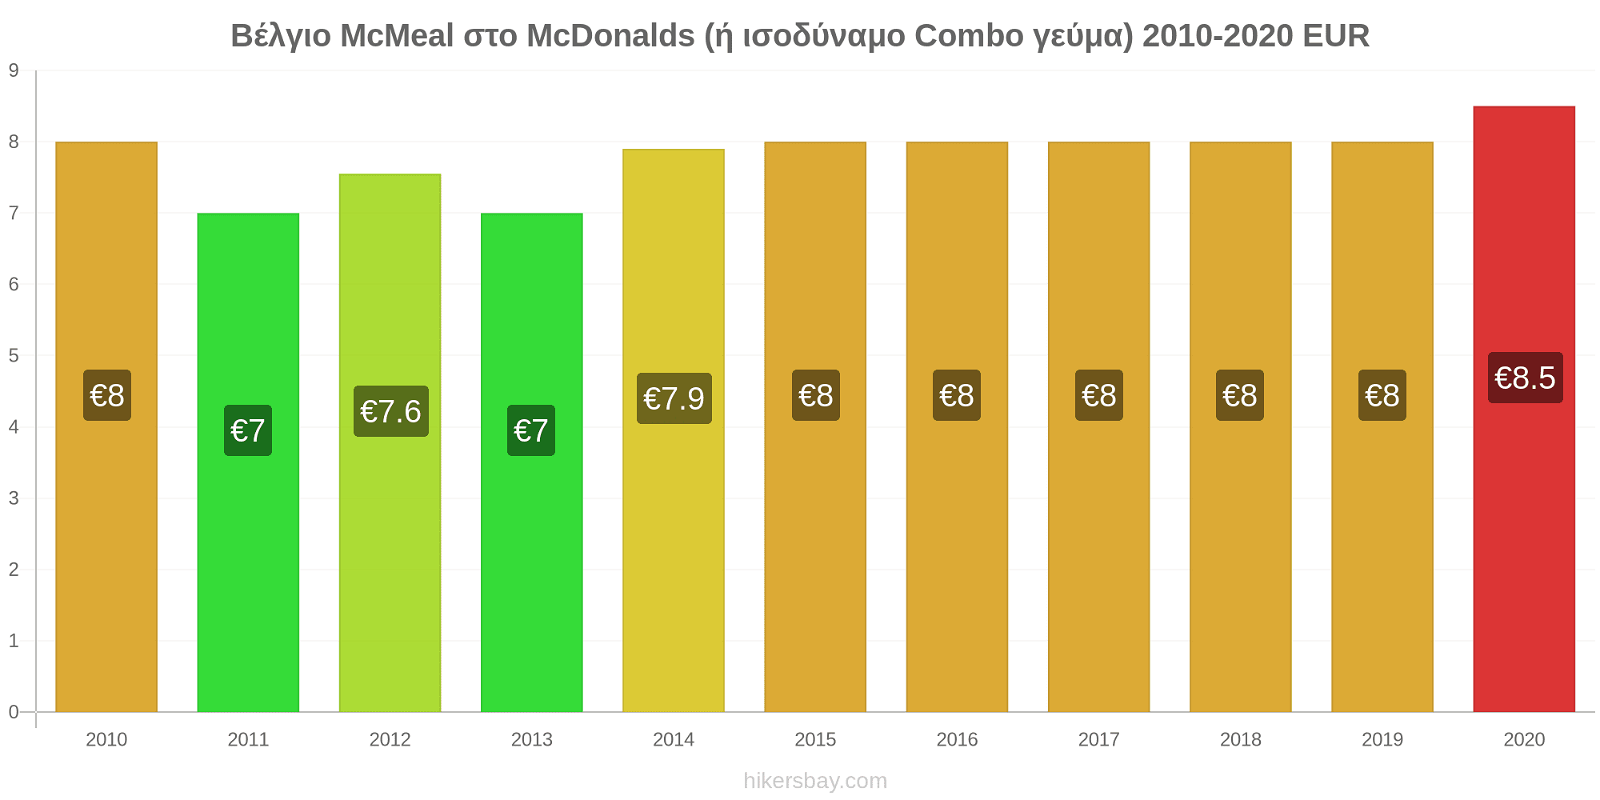 Βέλγιο αλλαγές τιμών McMeal στο McDonalds (ή ισοδύναμο Combo γεύμα) hikersbay.com